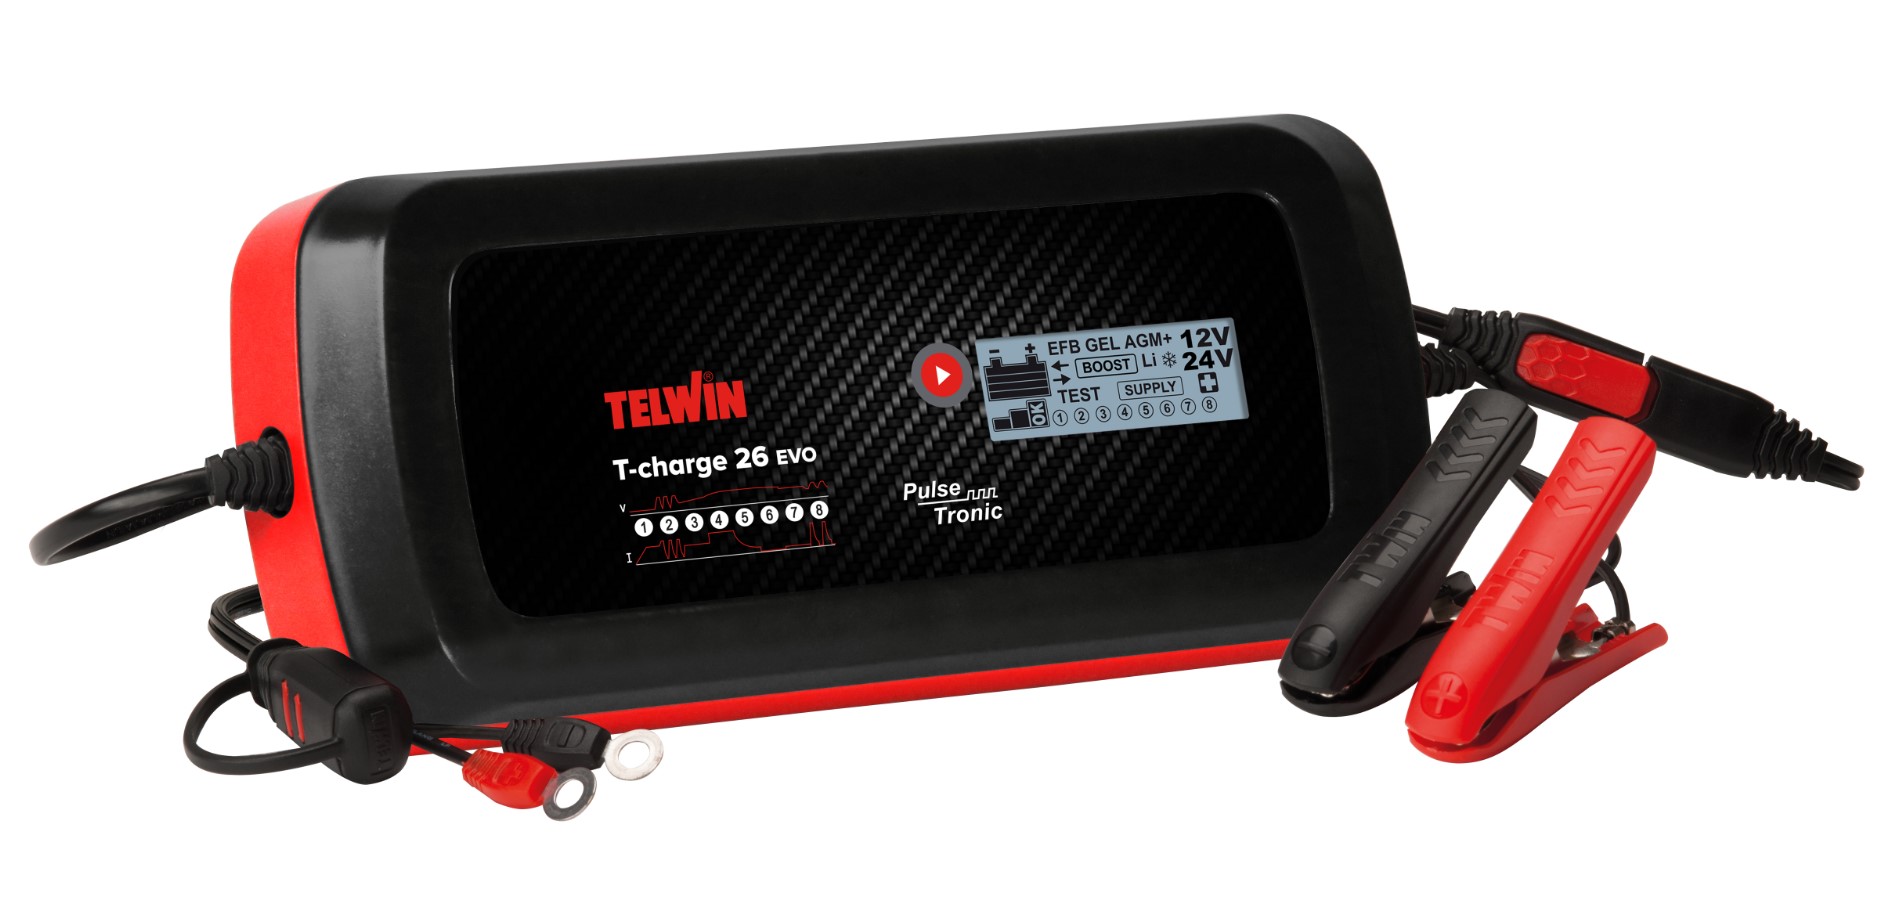 Caricabatterie e mantenitore auto furgoni 12-24V Telwin T-Charge 26 EVO -  Cod. 807595 - ToolShop Italia